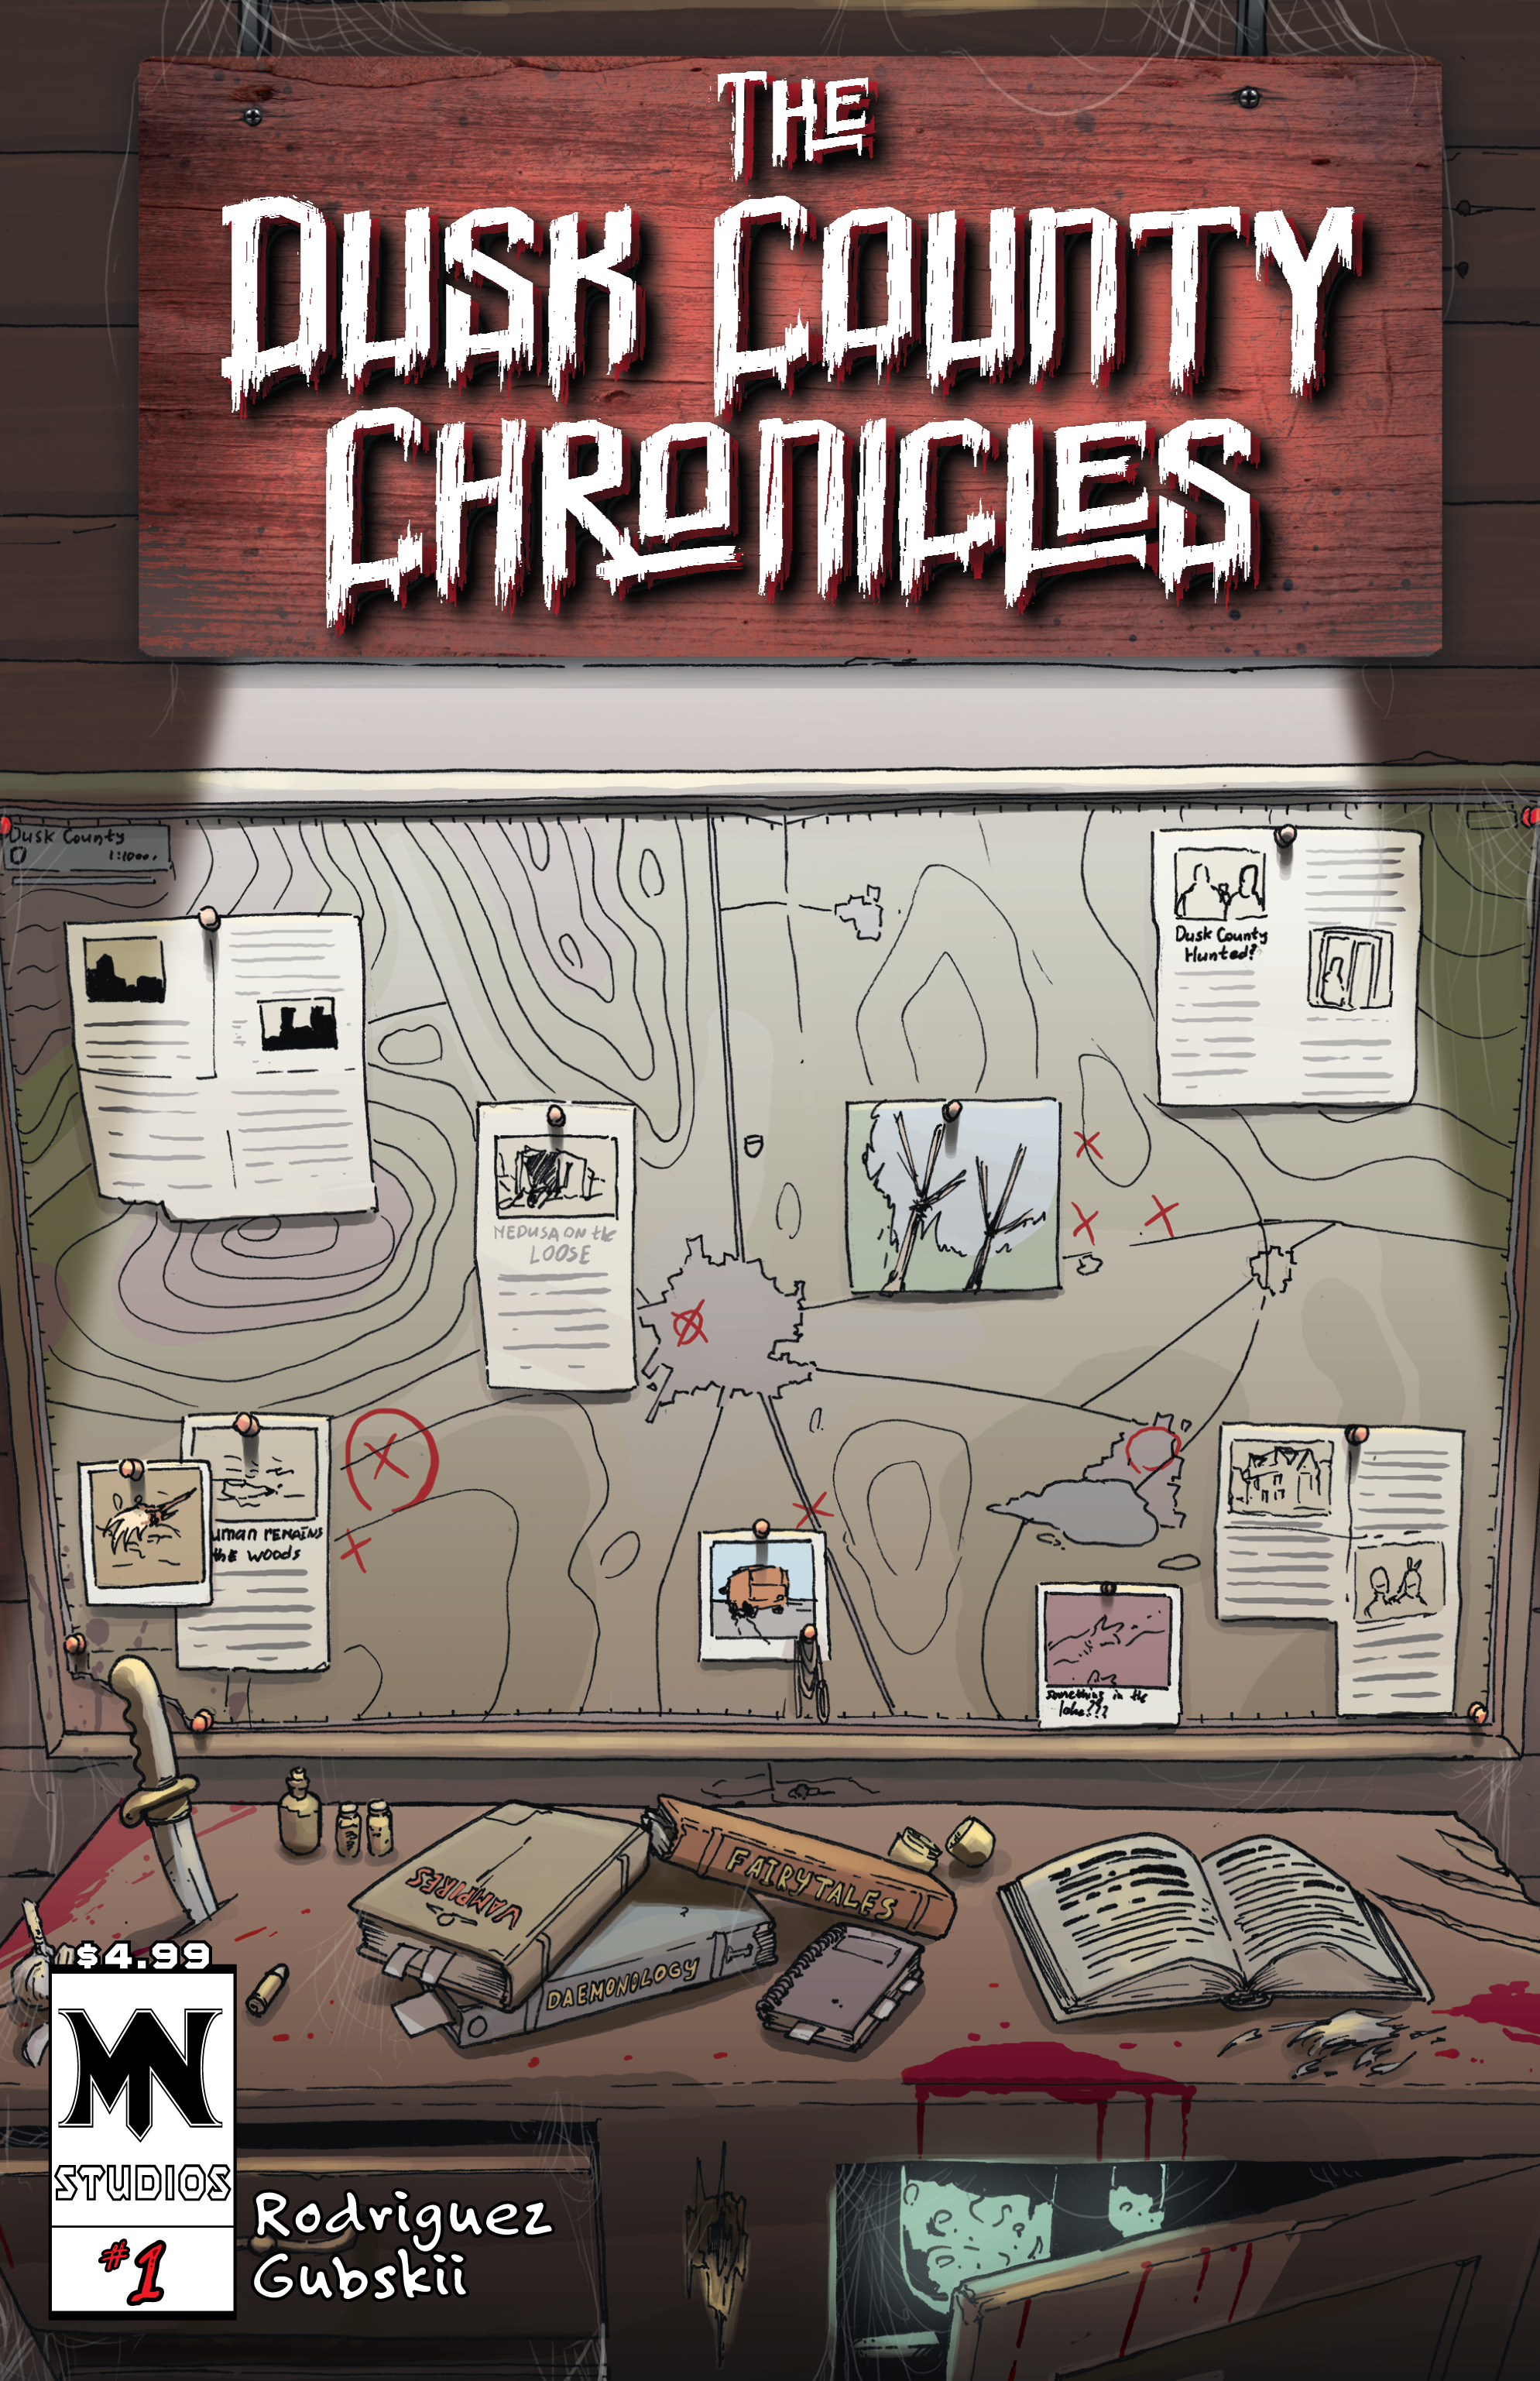 The Dusk County Chronicles #1